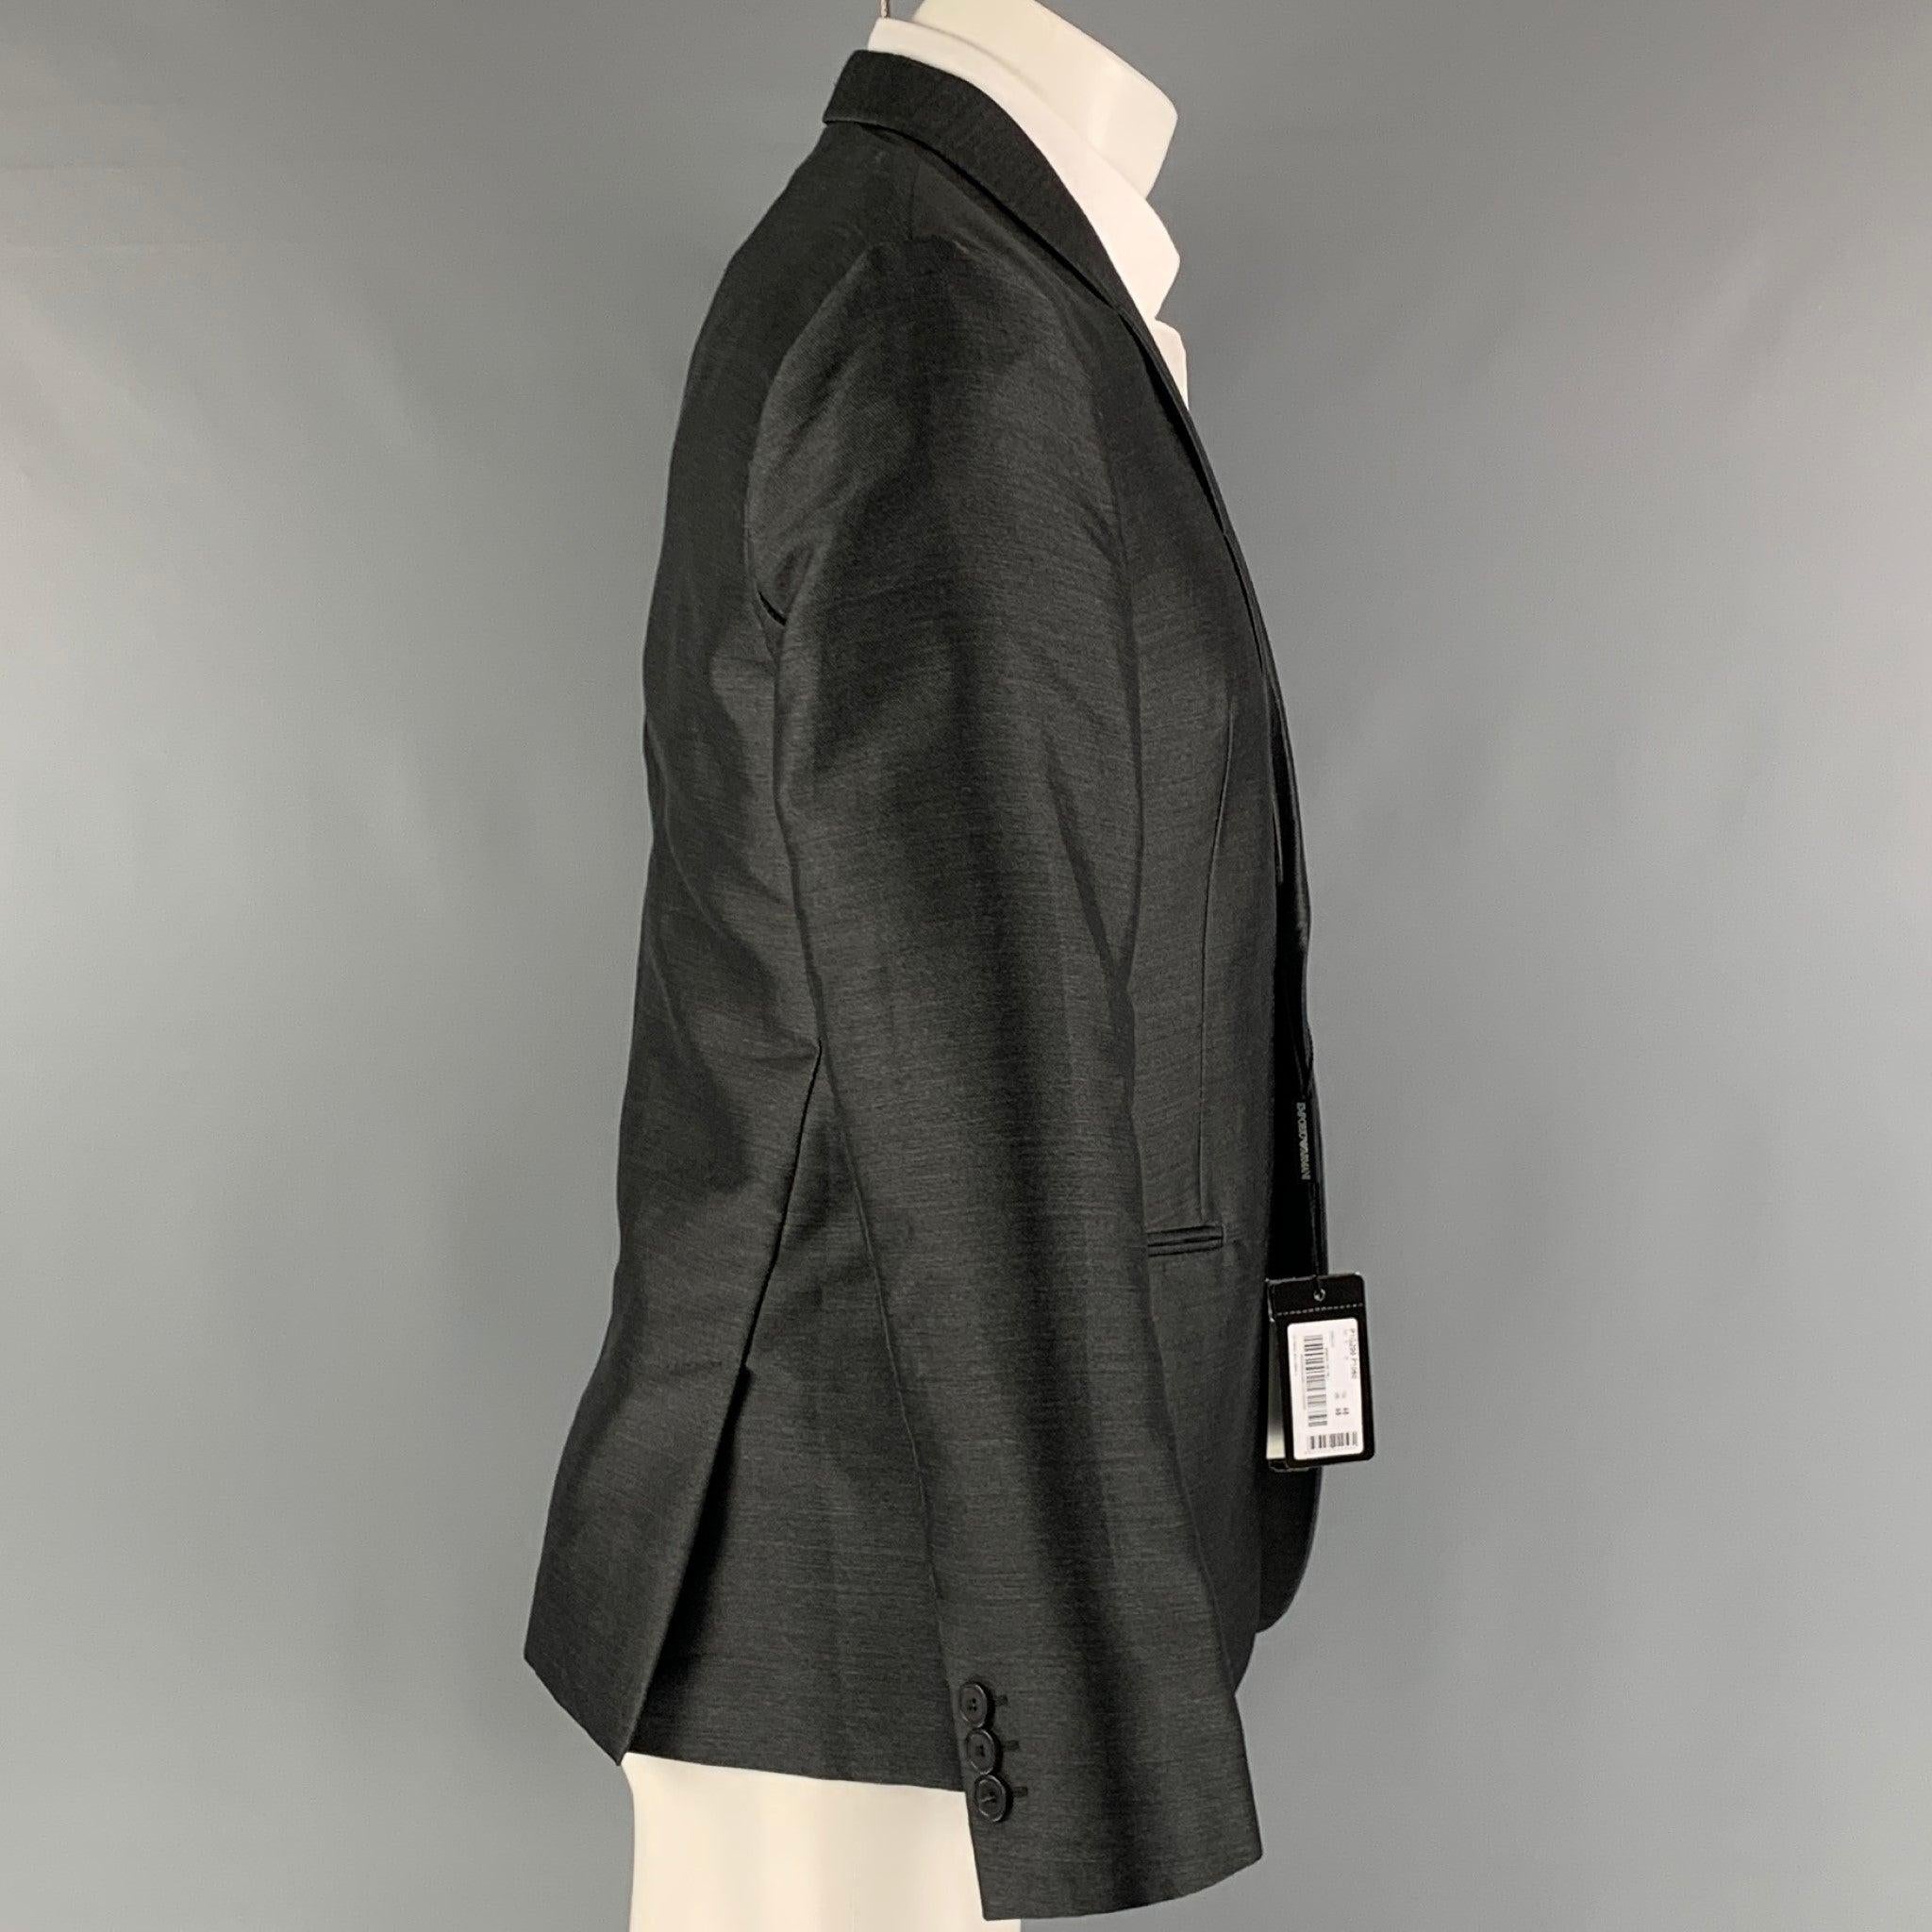 Le manteau de sport EMPORIO ARMANI est en polyester tissé anthracite avec une doublure complète, un col châle, des poches passepoilées et une fermeture à un seul bouton. Fabriquées en Italie. Nouveau avec Tags. 

Marqué :   48 

Mesures : 
 
Épaule